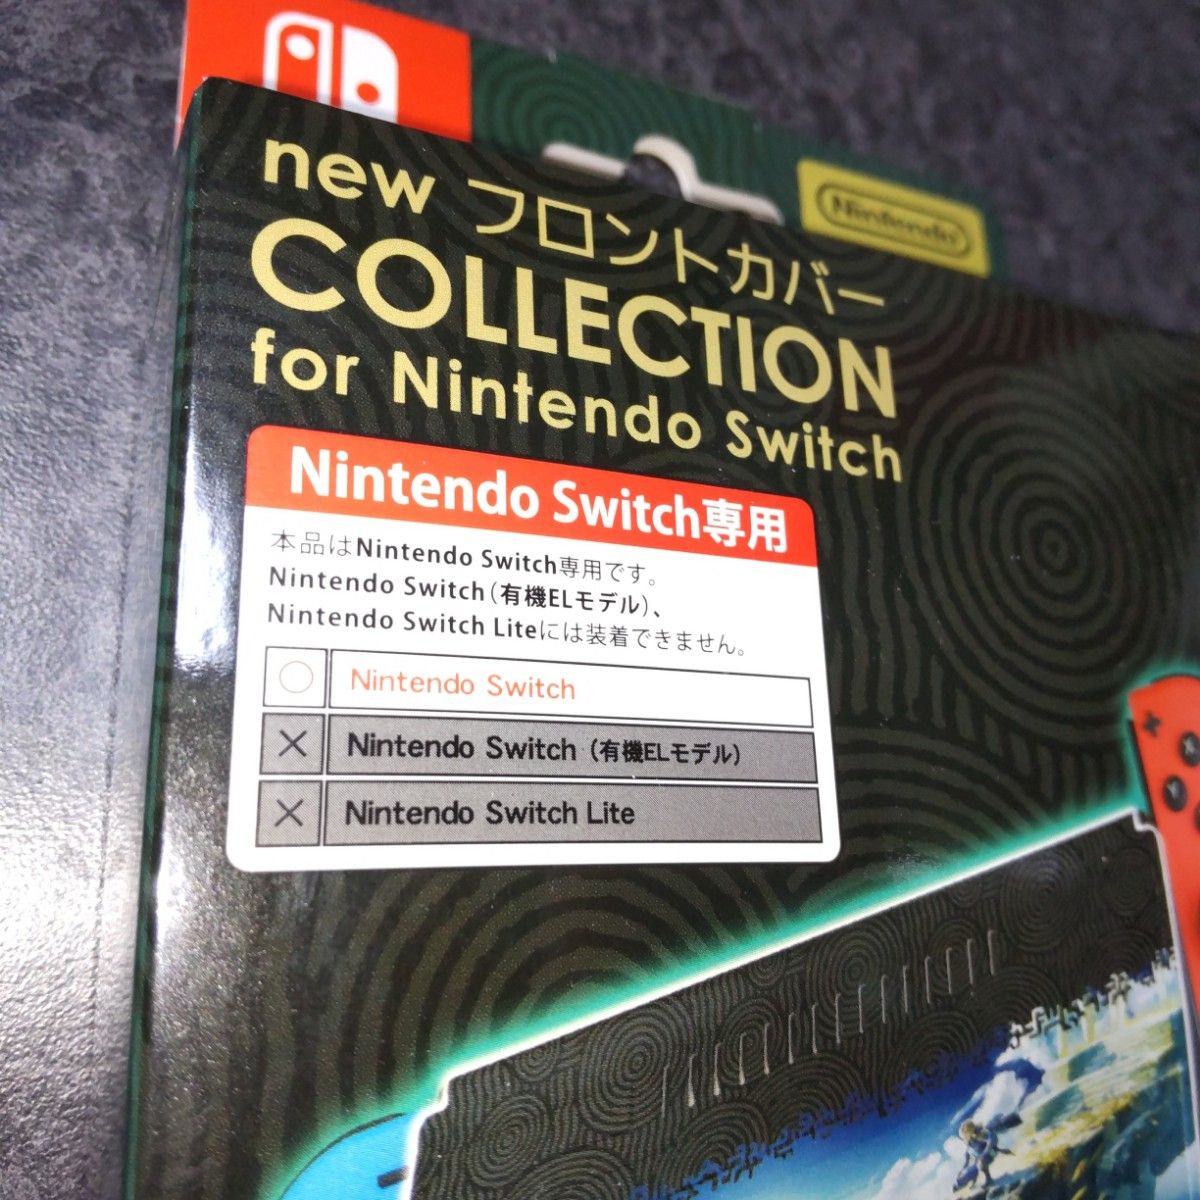 new フロントカバー COLLECTION for Nintendo Switchゼルダの伝説 未使用品